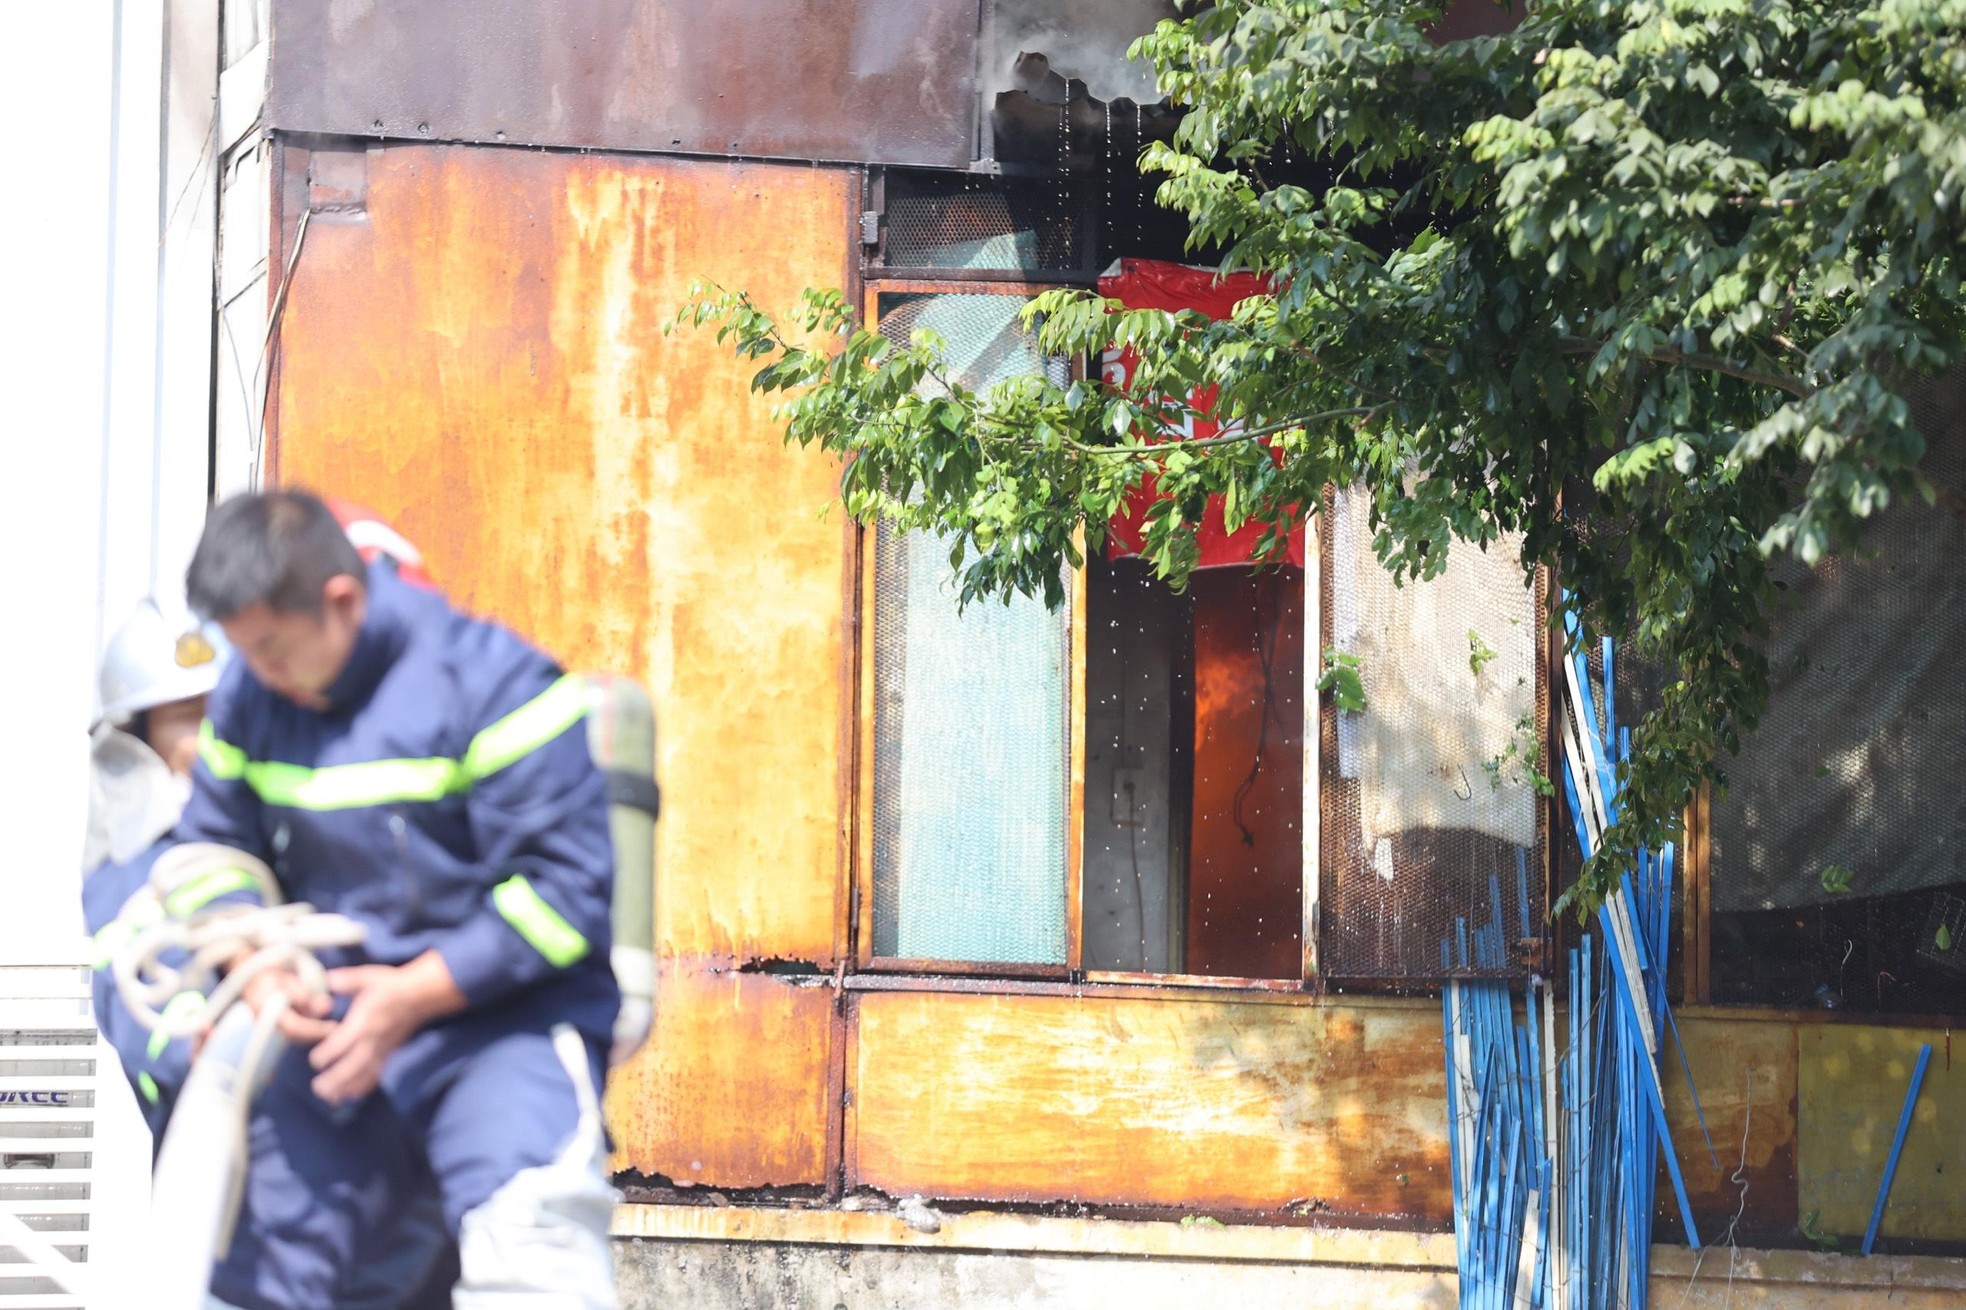 Đang cháy lớn trên phố Hà Nội, khói bốc nghi ngút, người dân ôm tài sản bỏ chạy - Ảnh 6.